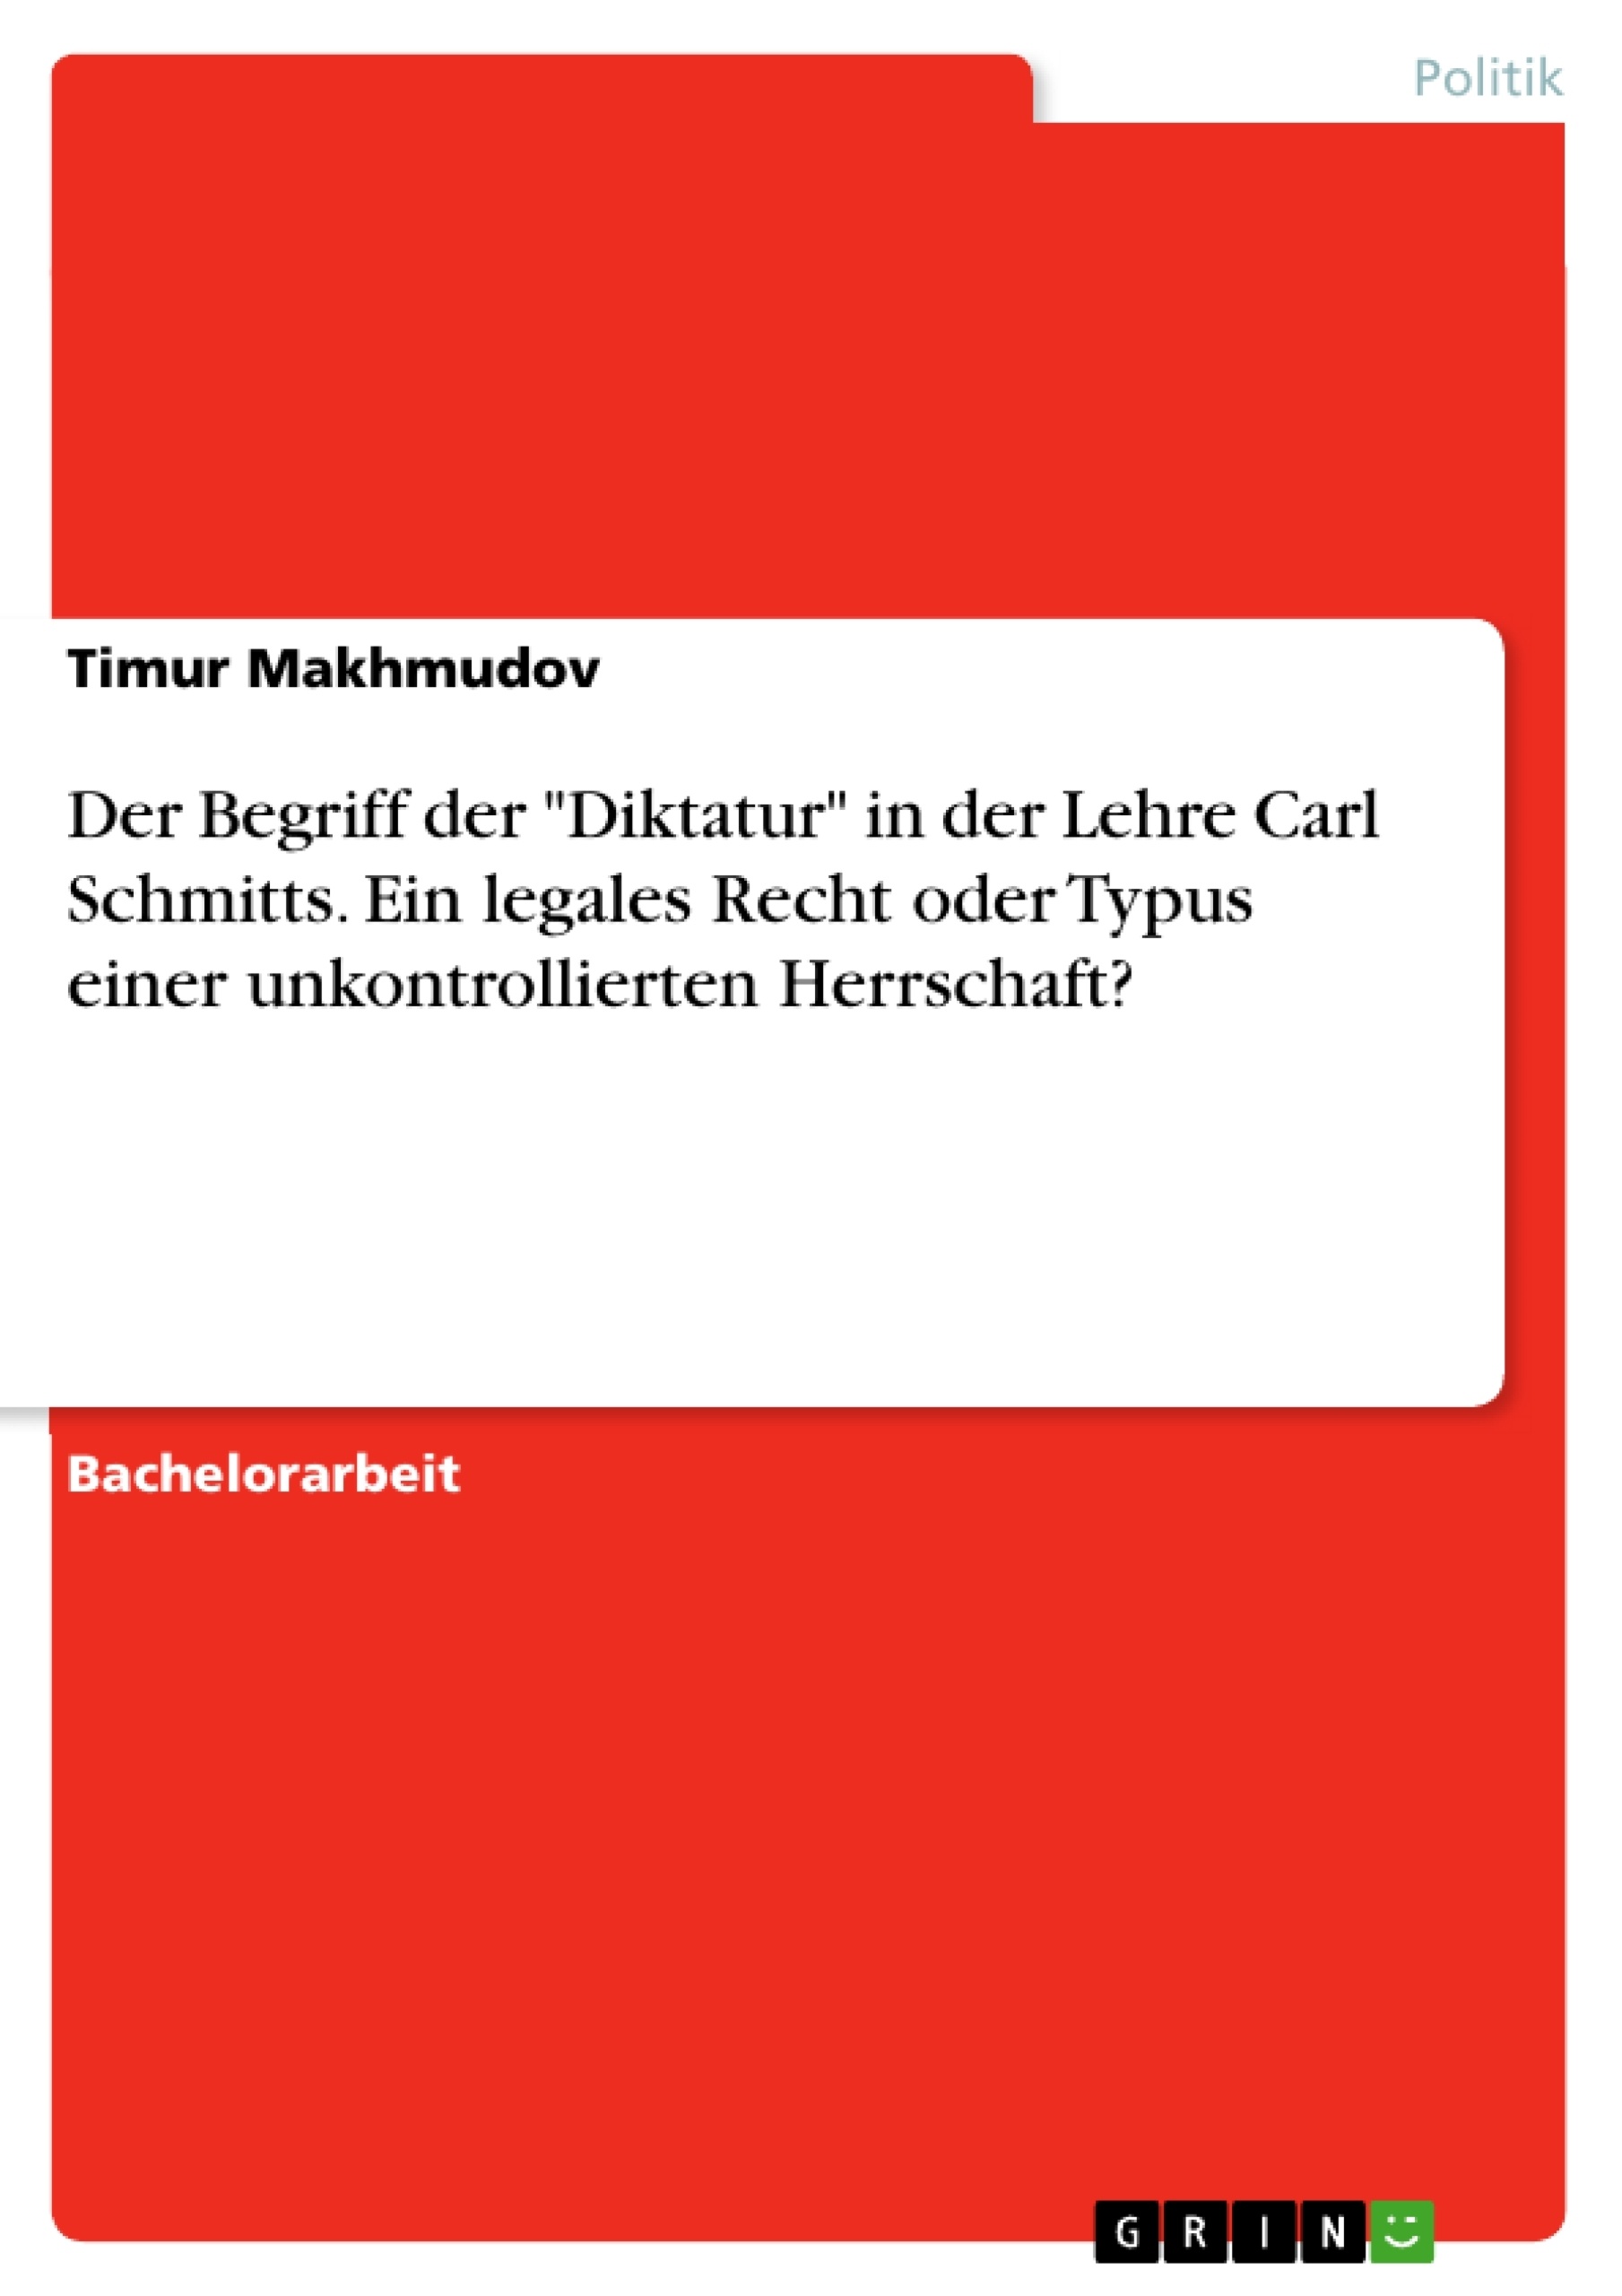 Title: Der Begriff der "Diktatur" in der Lehre Carl Schmitts. Ein legales Recht oder Typus einer unkontrollierten Herrschaft?